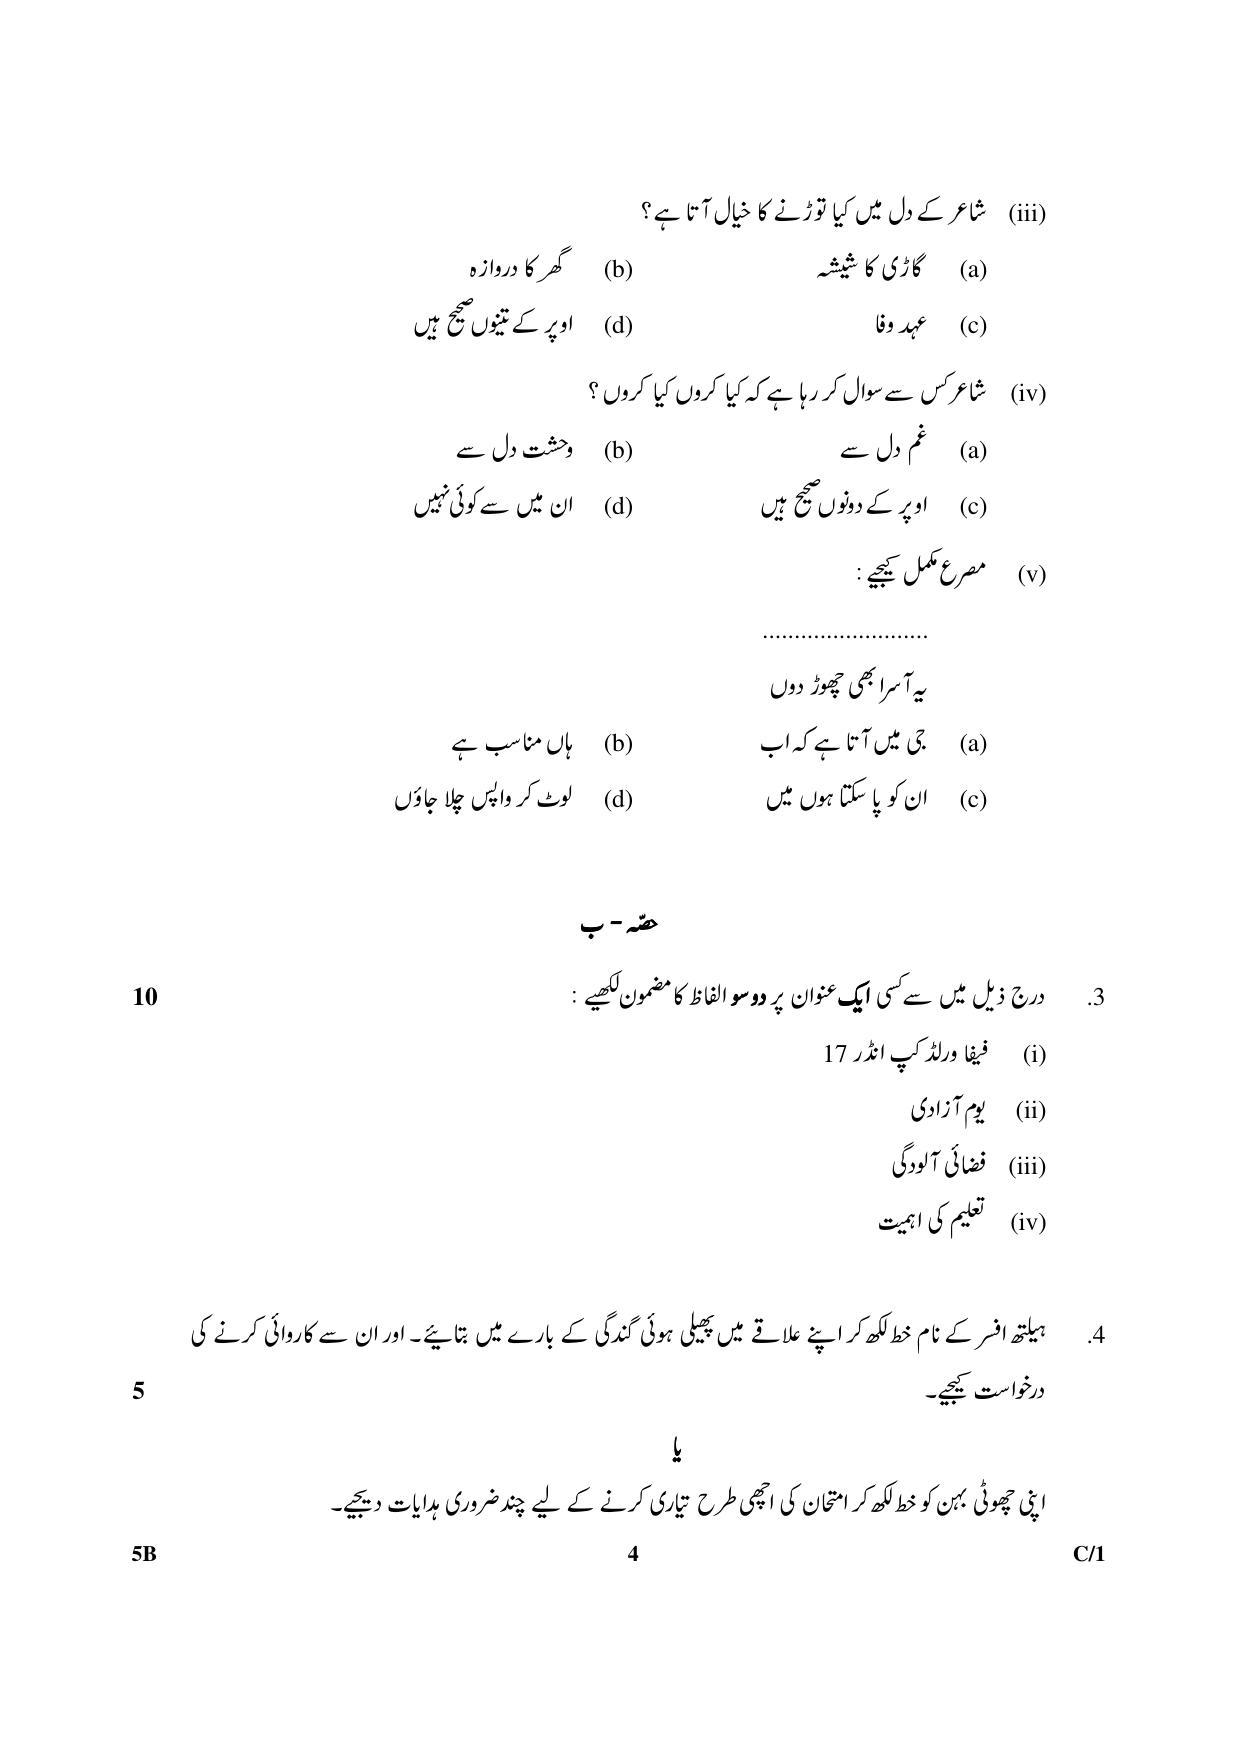 CBSE Class 10 5B Urdu (Course B) 2018 Compartment Question Paper - Page 4